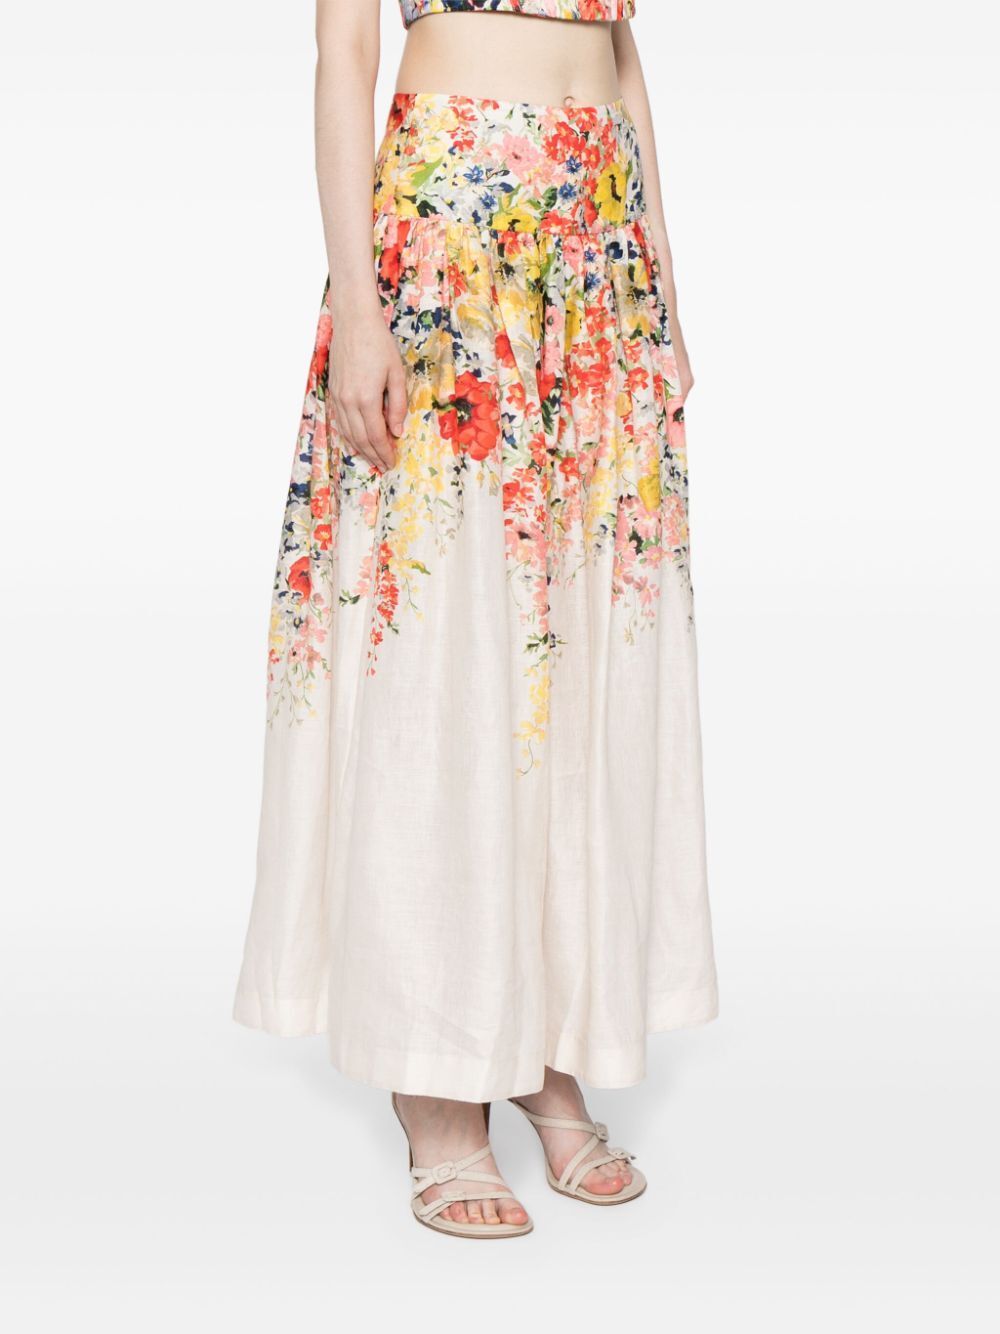 Floral Print Linen Skirt for Women